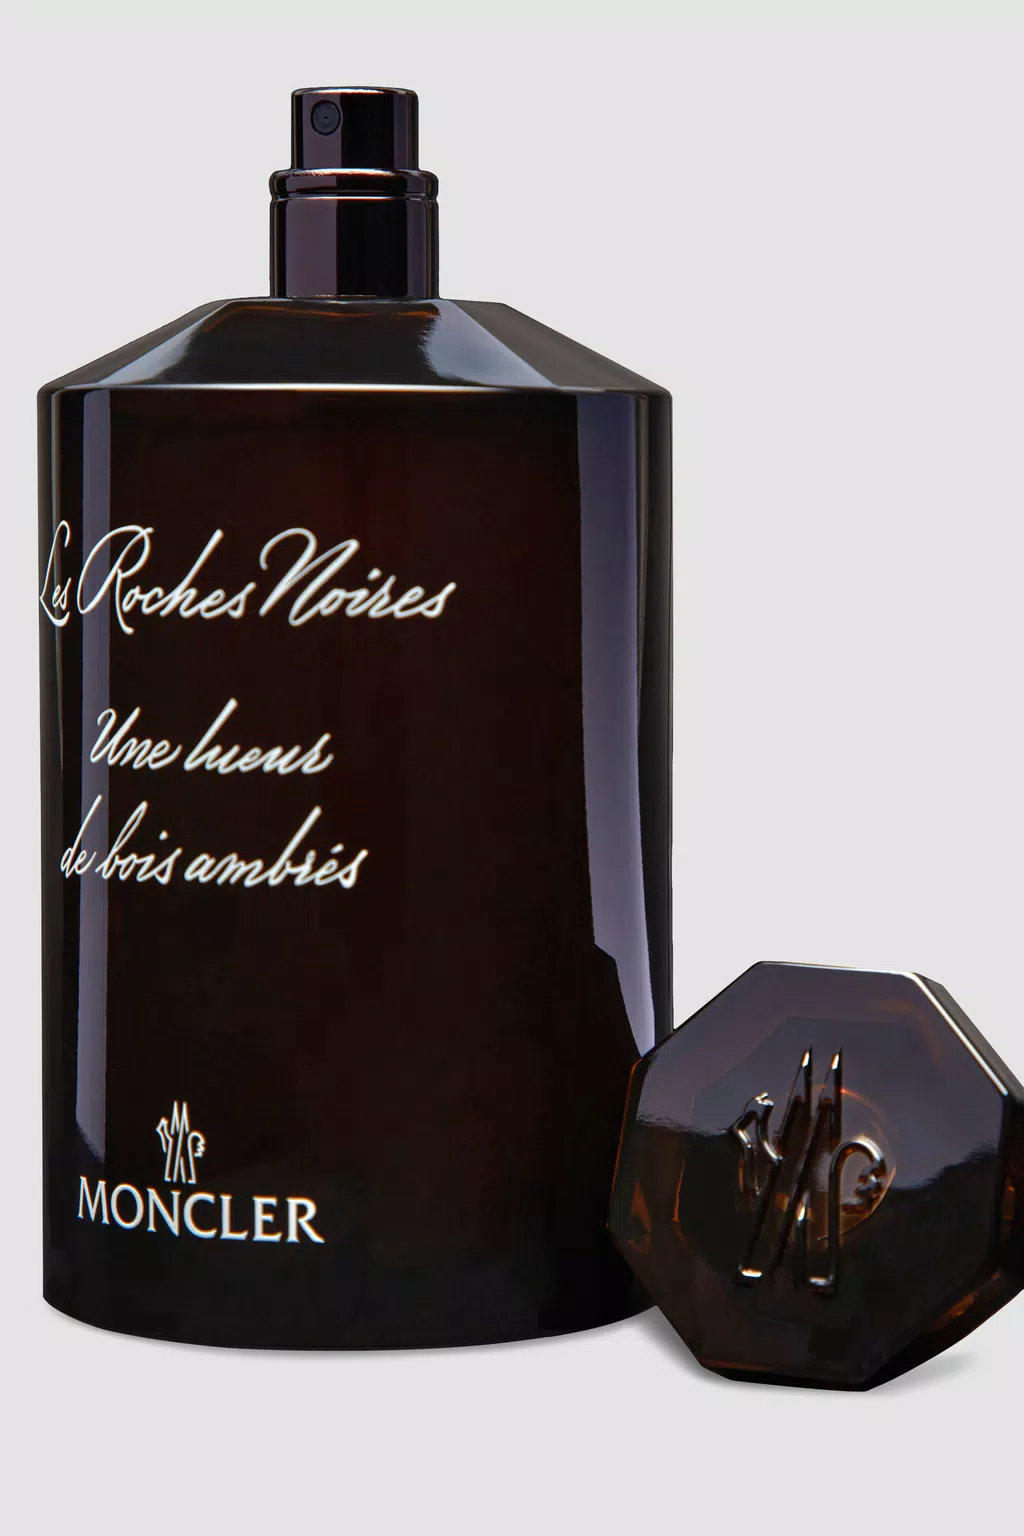 Black Les Roches Noires 6.7 Fl.Oz. - Perfumes for Men | Moncler US